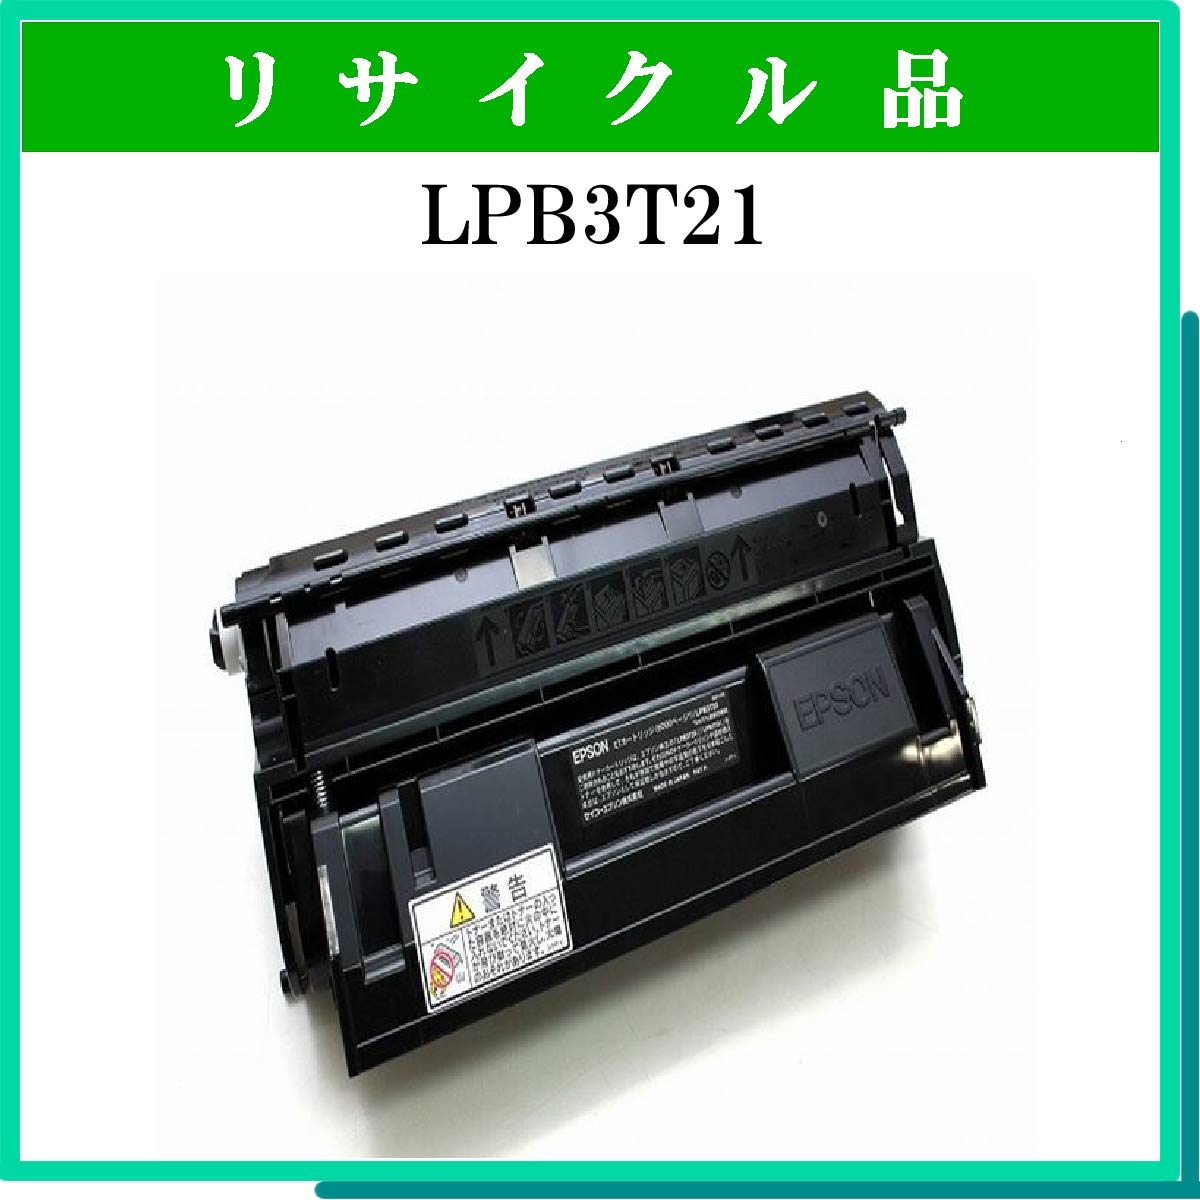 LPB3T20/21 : トナー・リサイクルトナー通販はブルースカイネット： リサイクルトナー専門店